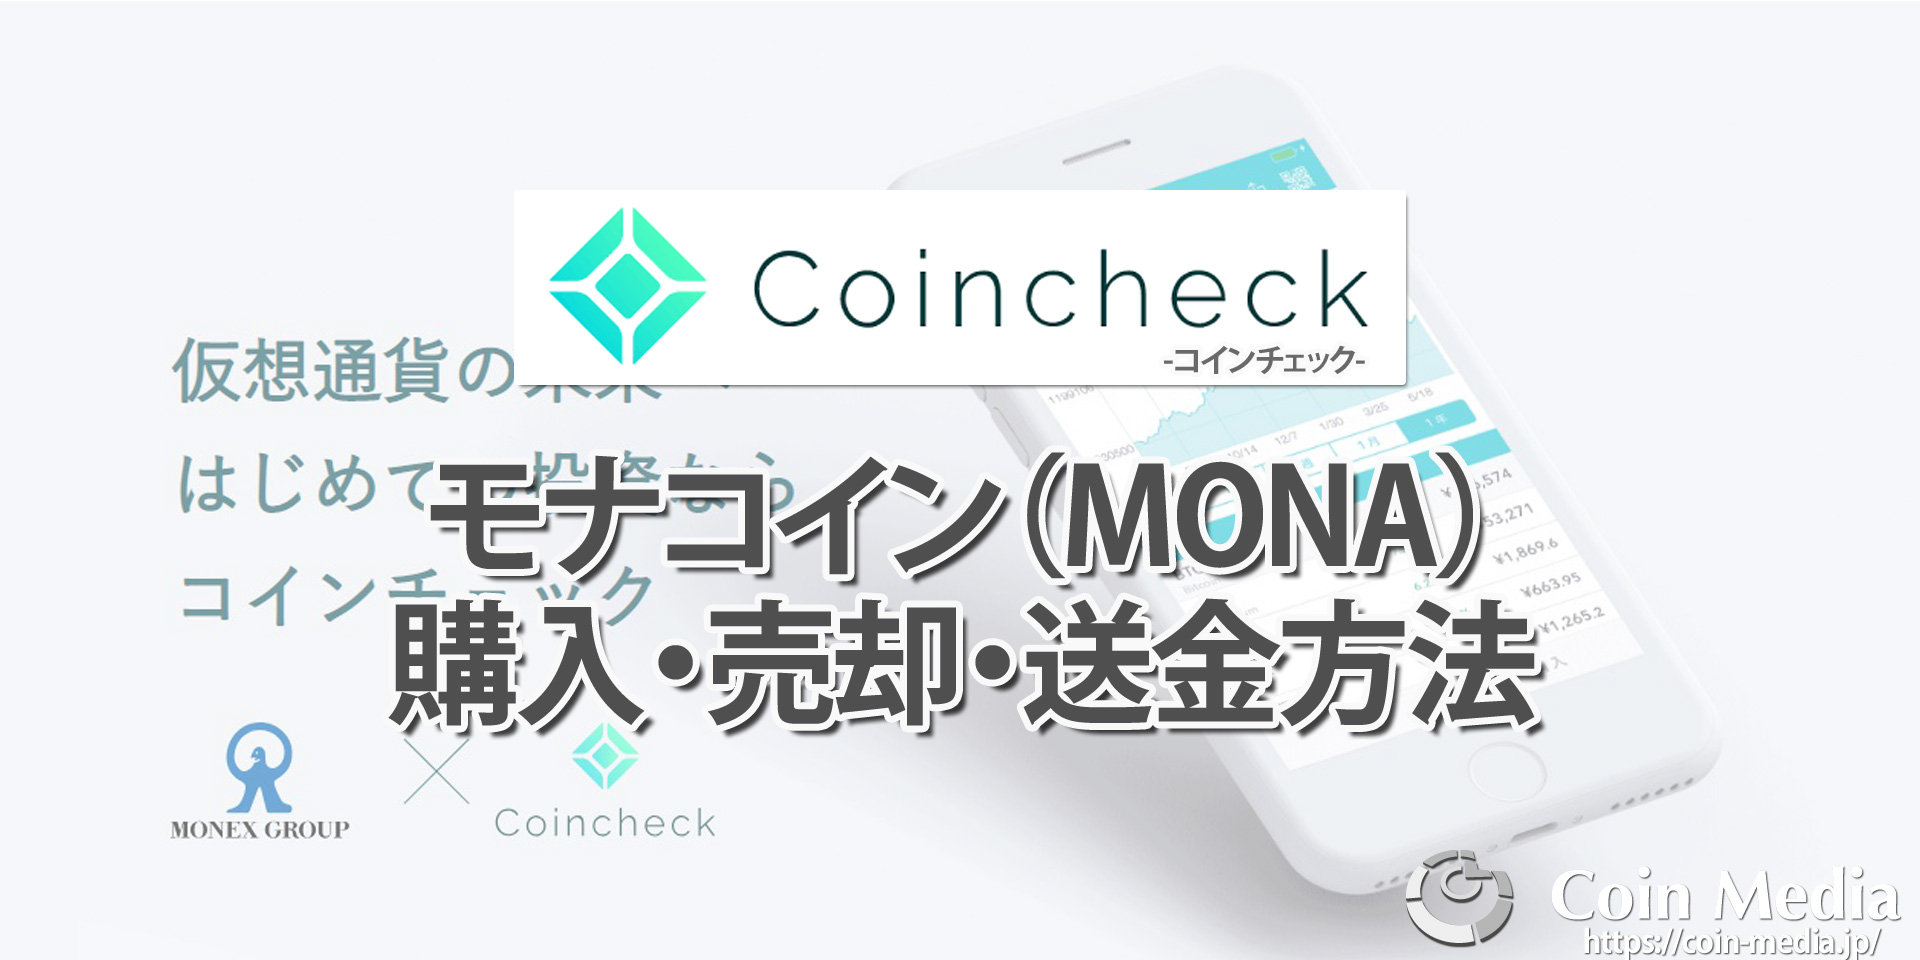 コインチェック（Coincheck）でのモナコイン （MONA）の購入方法・売却方法・送金方法を画像を使って解説